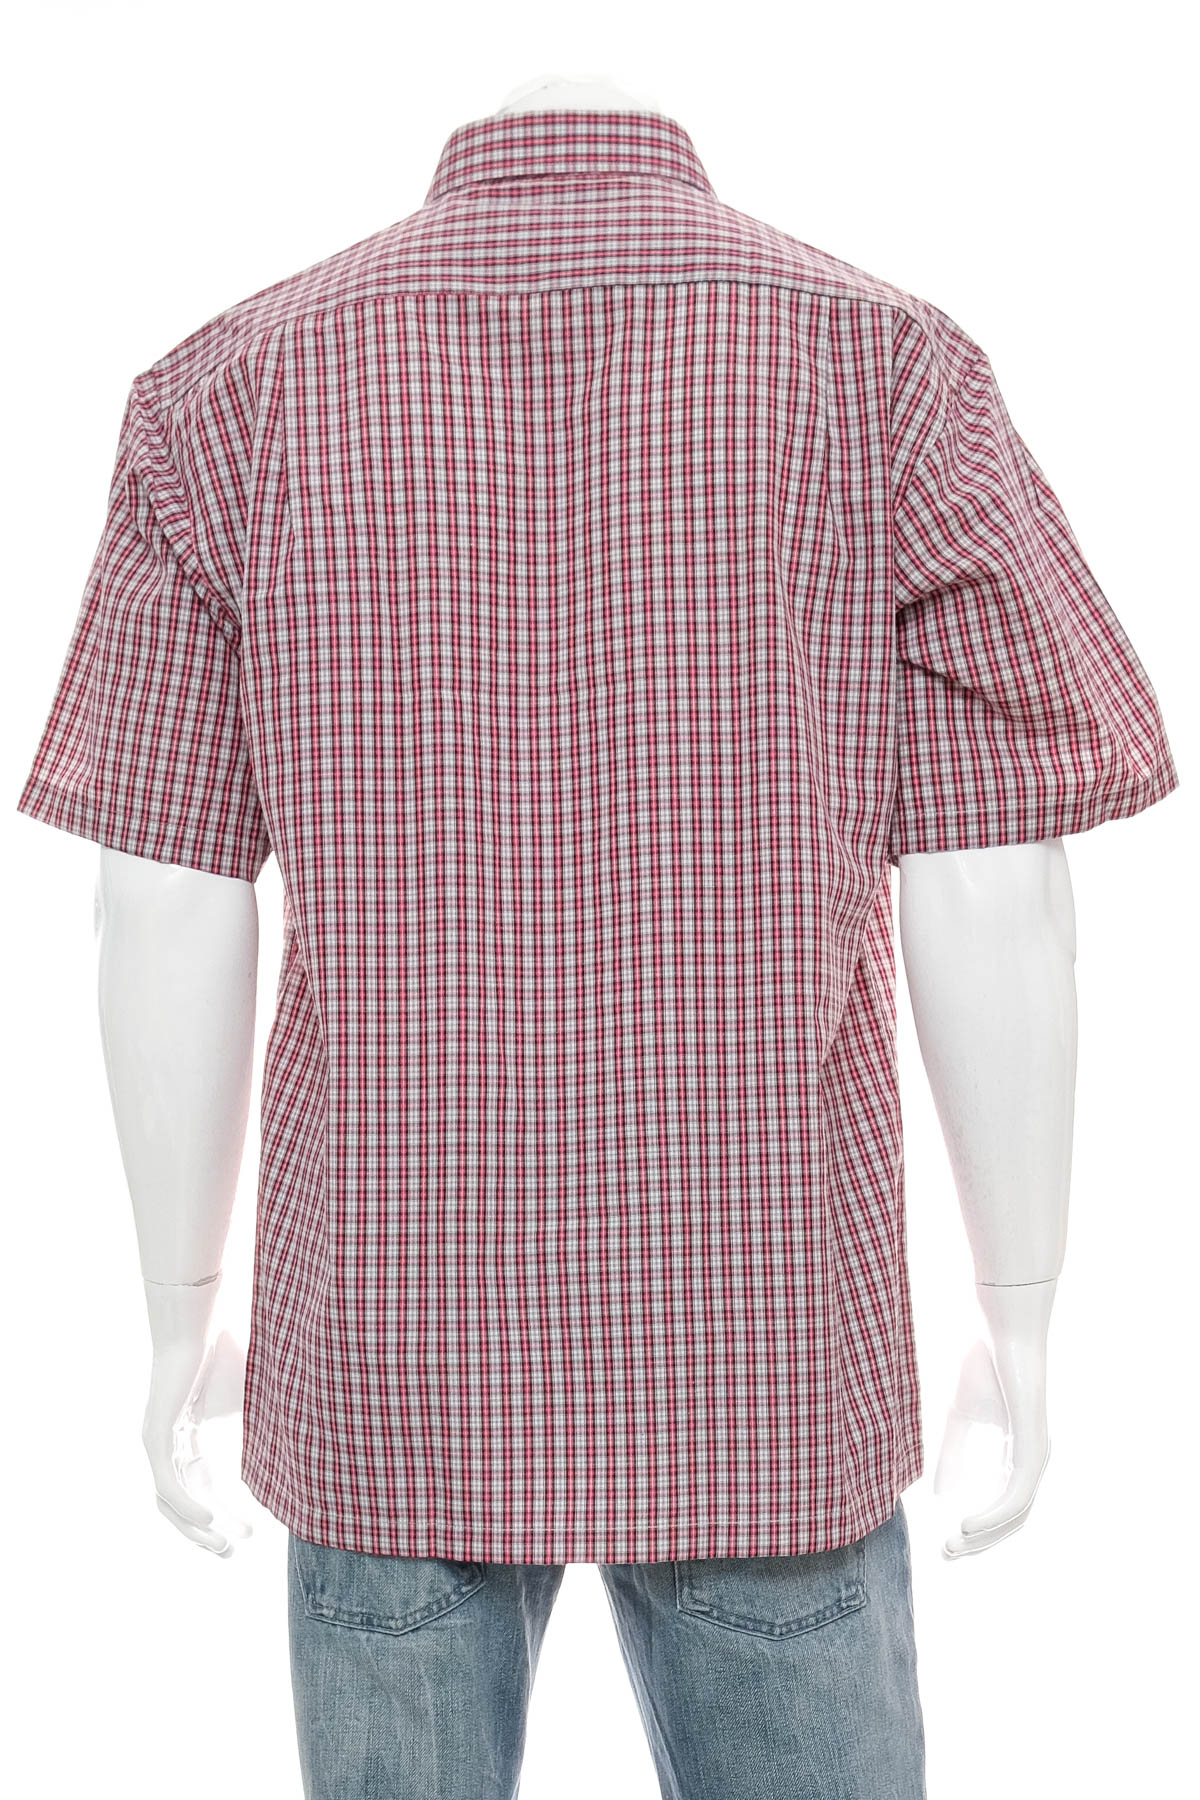 Ανδρικό πουκάμισο - Avant Garde - 1